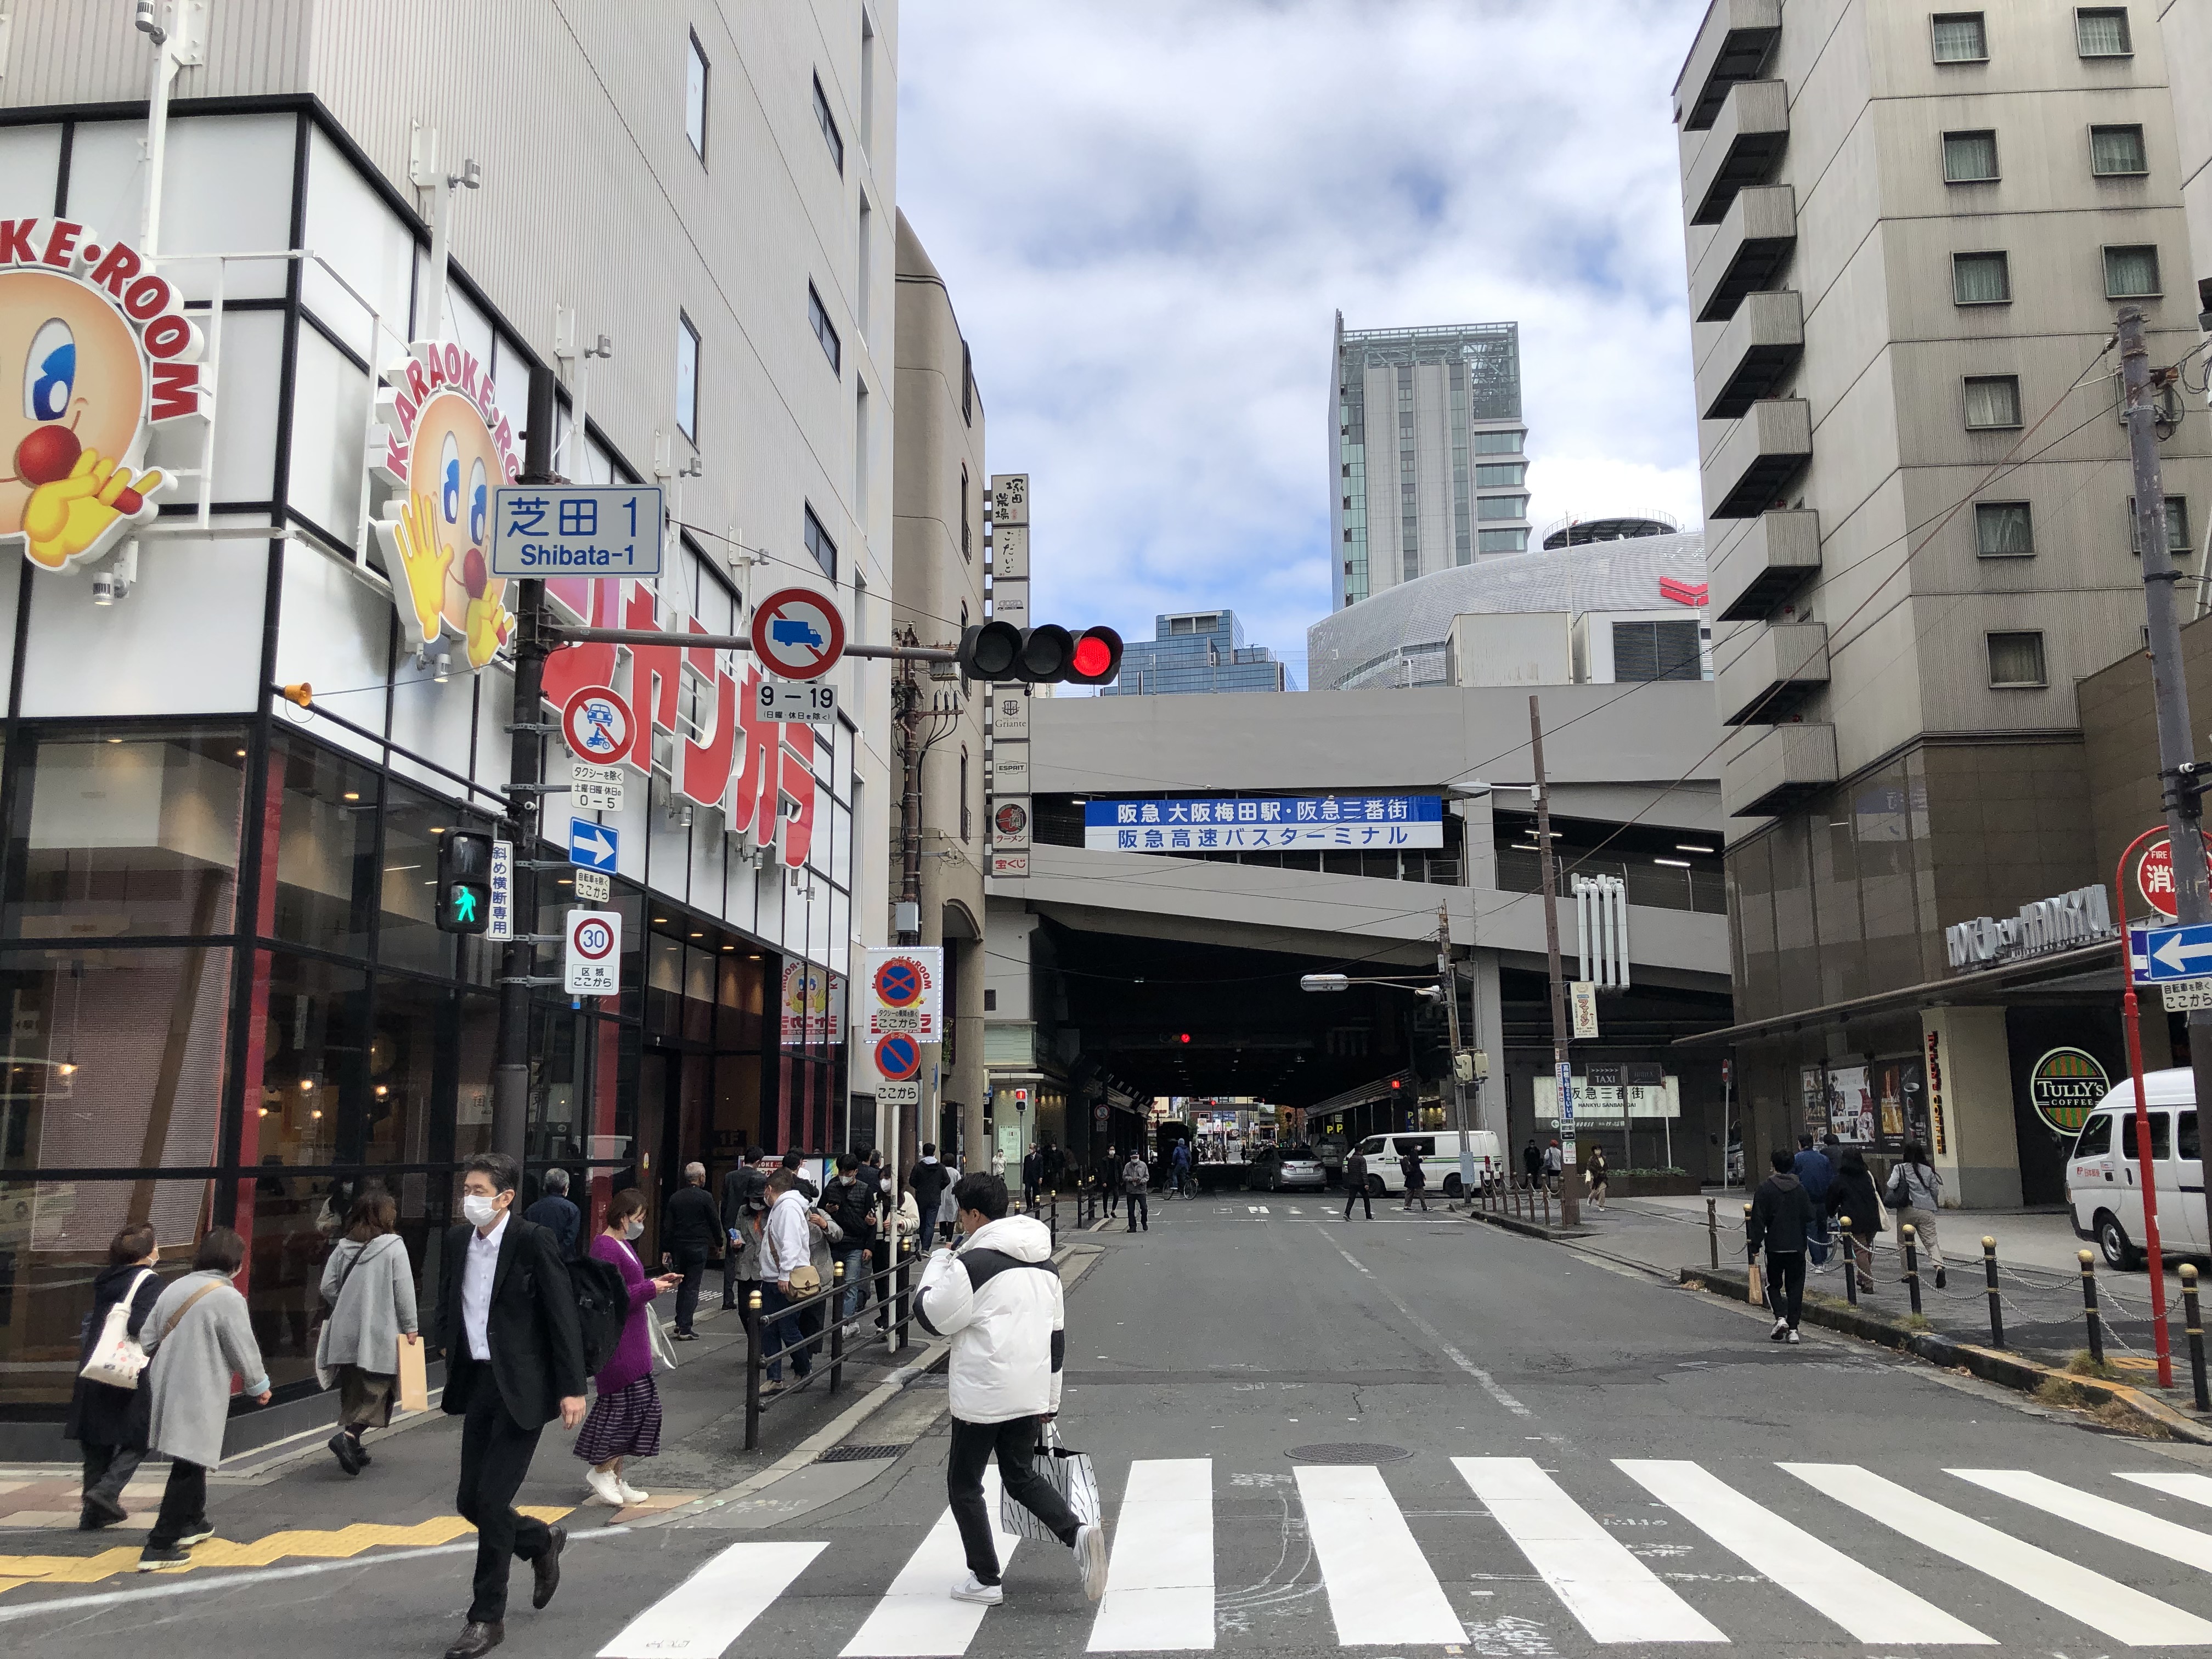 メンズライフクリニック 大阪・梅田へのアクセス